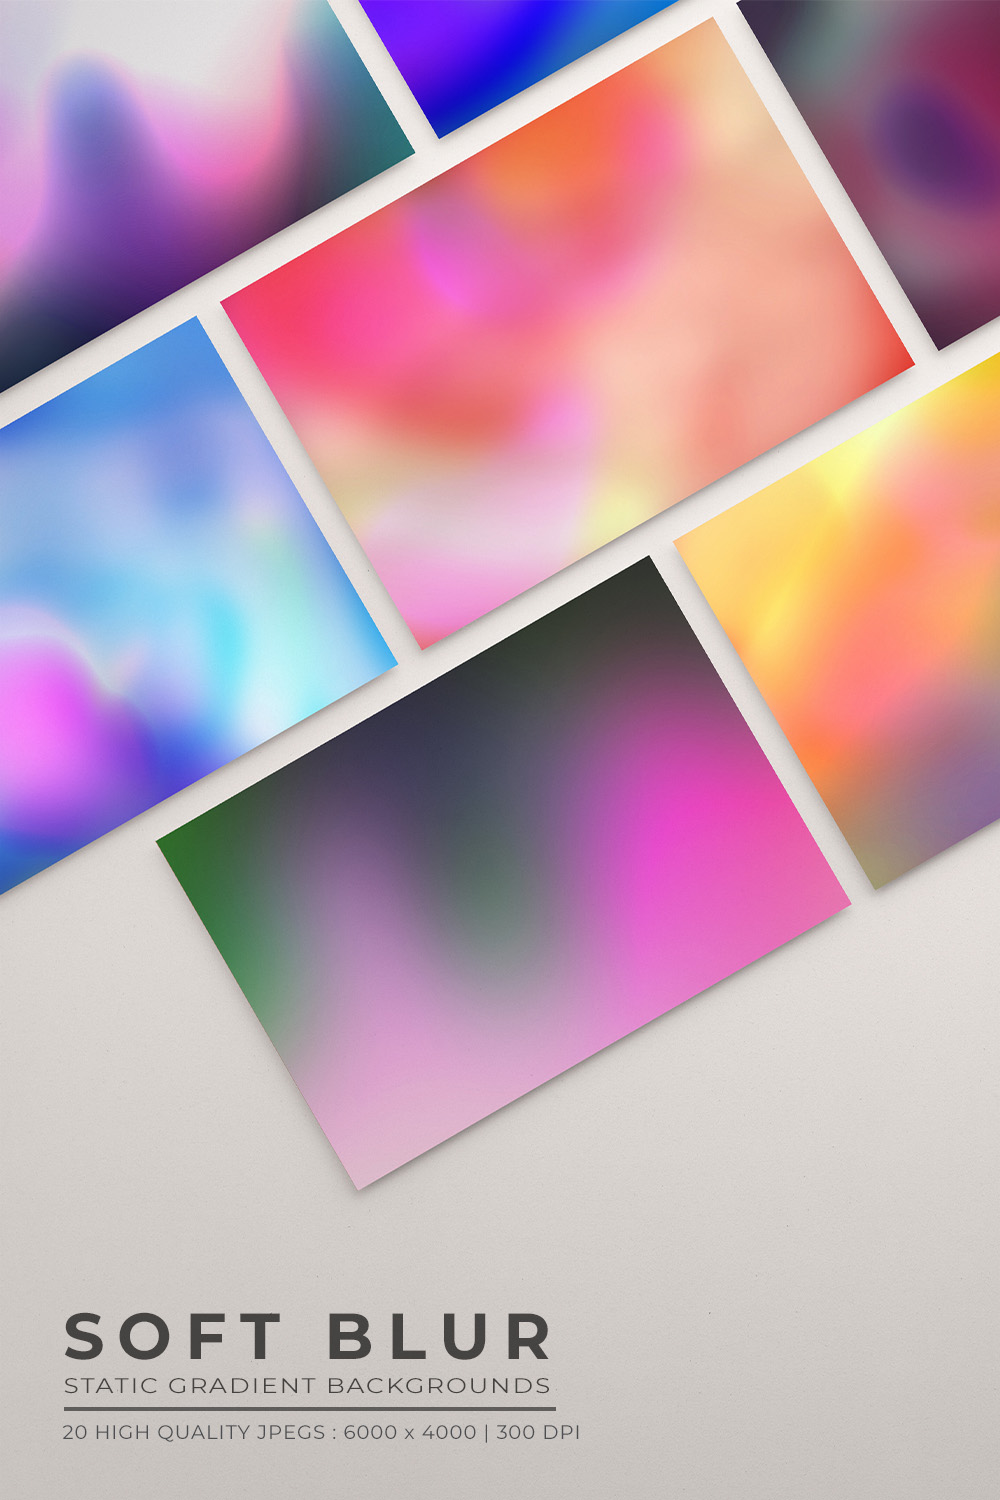 Soft Blur gradient Bundle - set of 20 pinterest preview image.